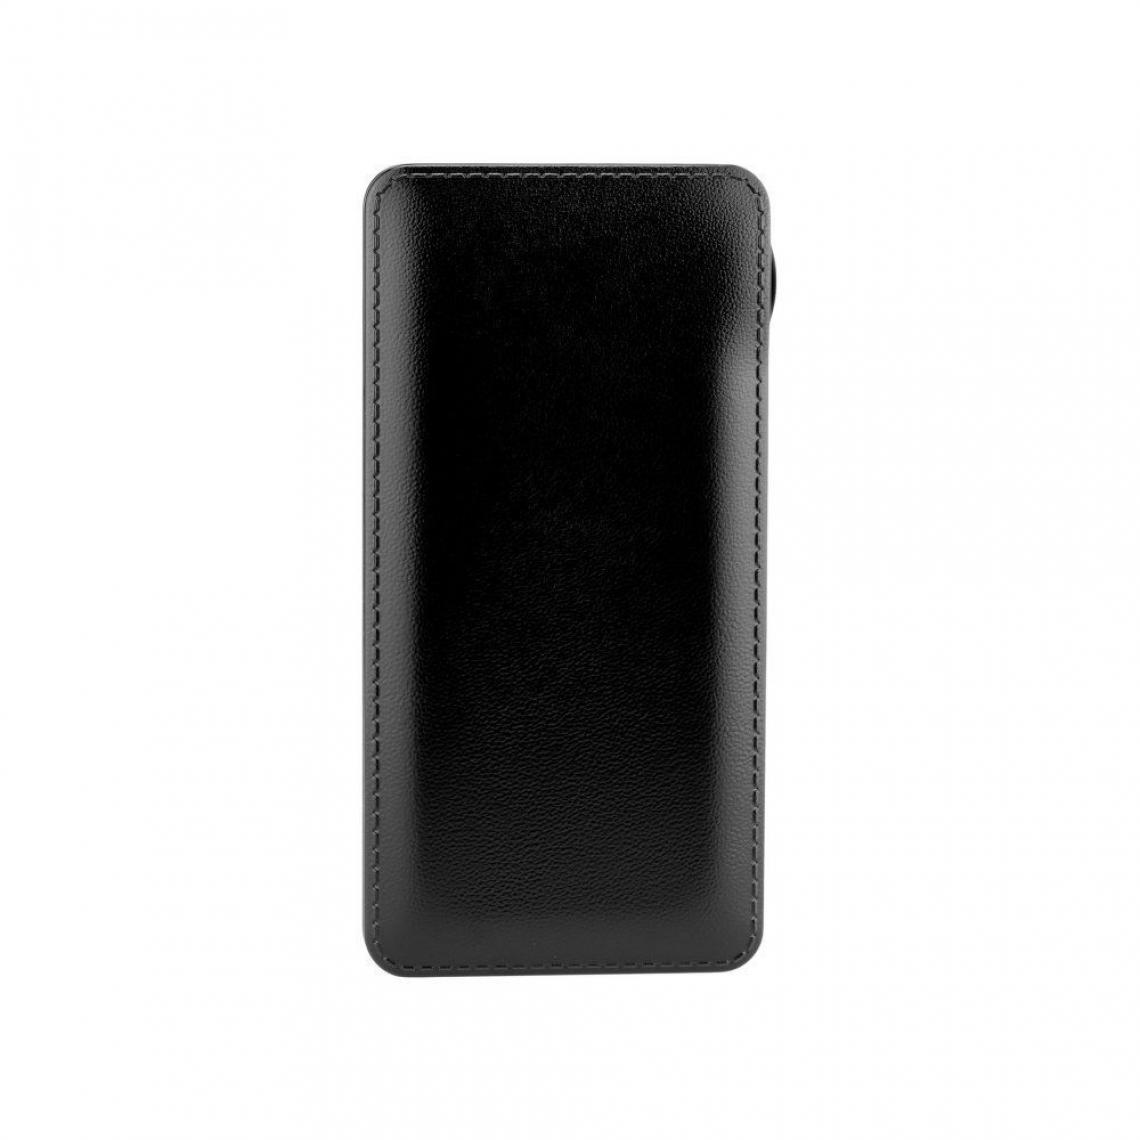 Ozzzo - Chargeur batterie externe 20000 mAh powerbank ozzzo noir pour Samsung Galaxy A51 - Autres accessoires smartphone